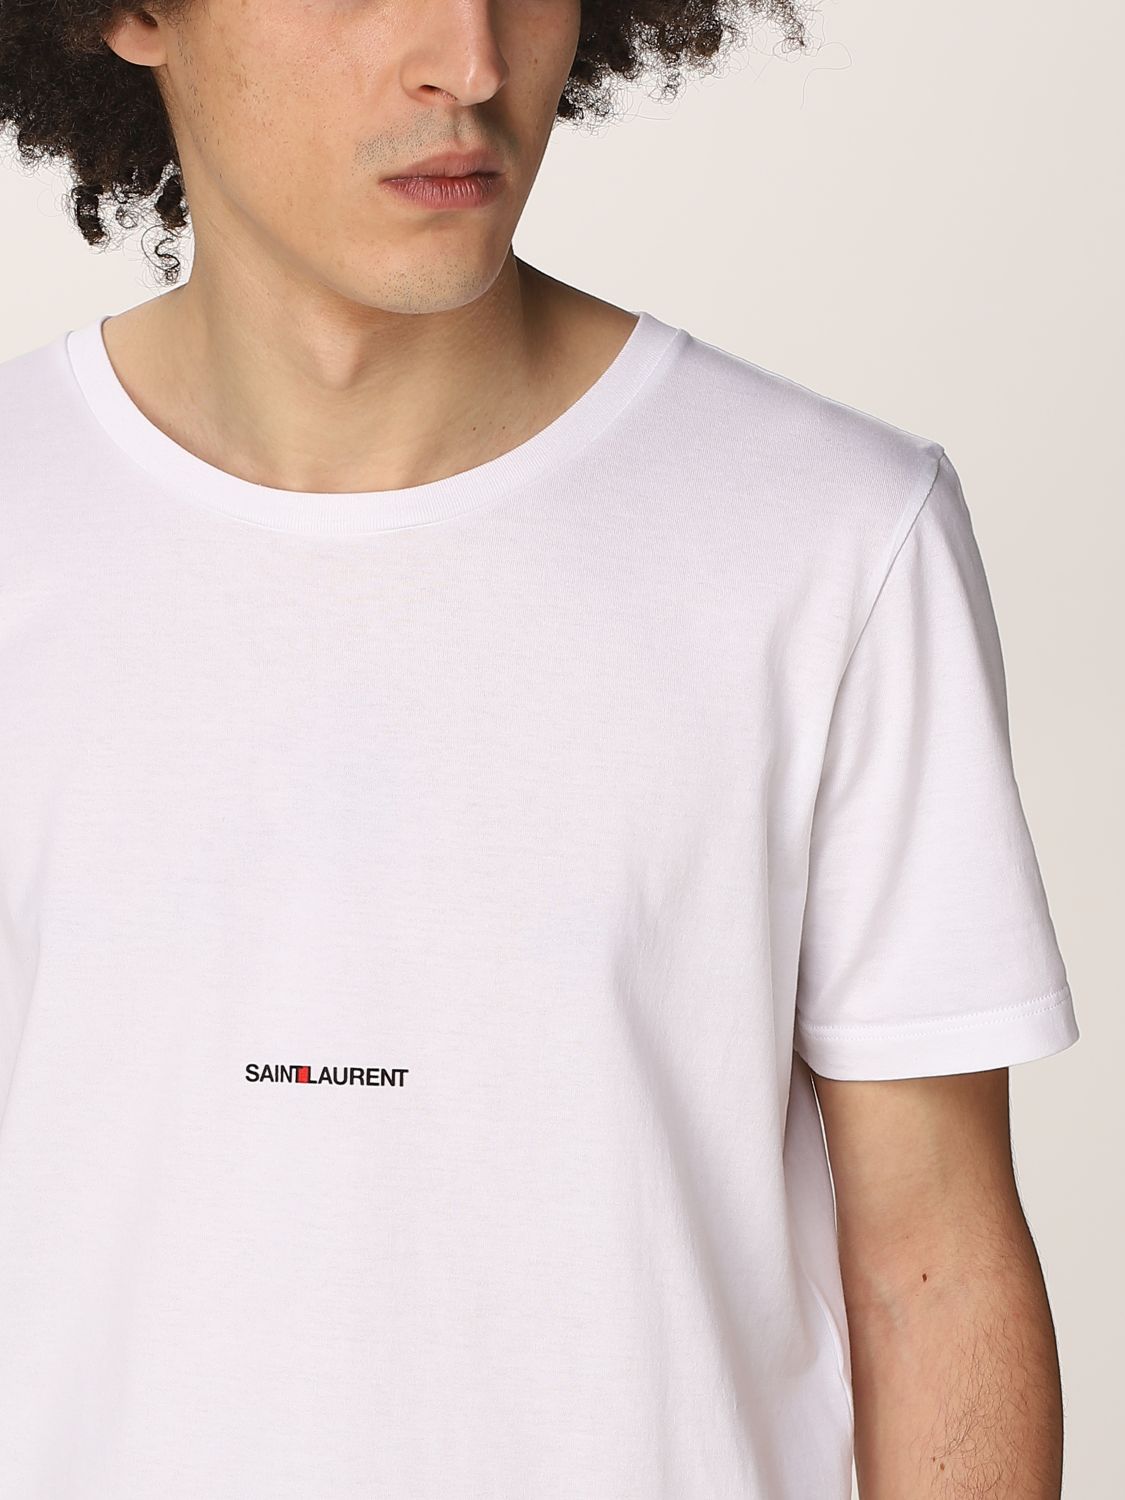 サンローラン(SAINT LAURENT): Tシャツ メンズ - ホワイト | Tシャツ サンローラン 464572YB2DQ GIGLIO.COM